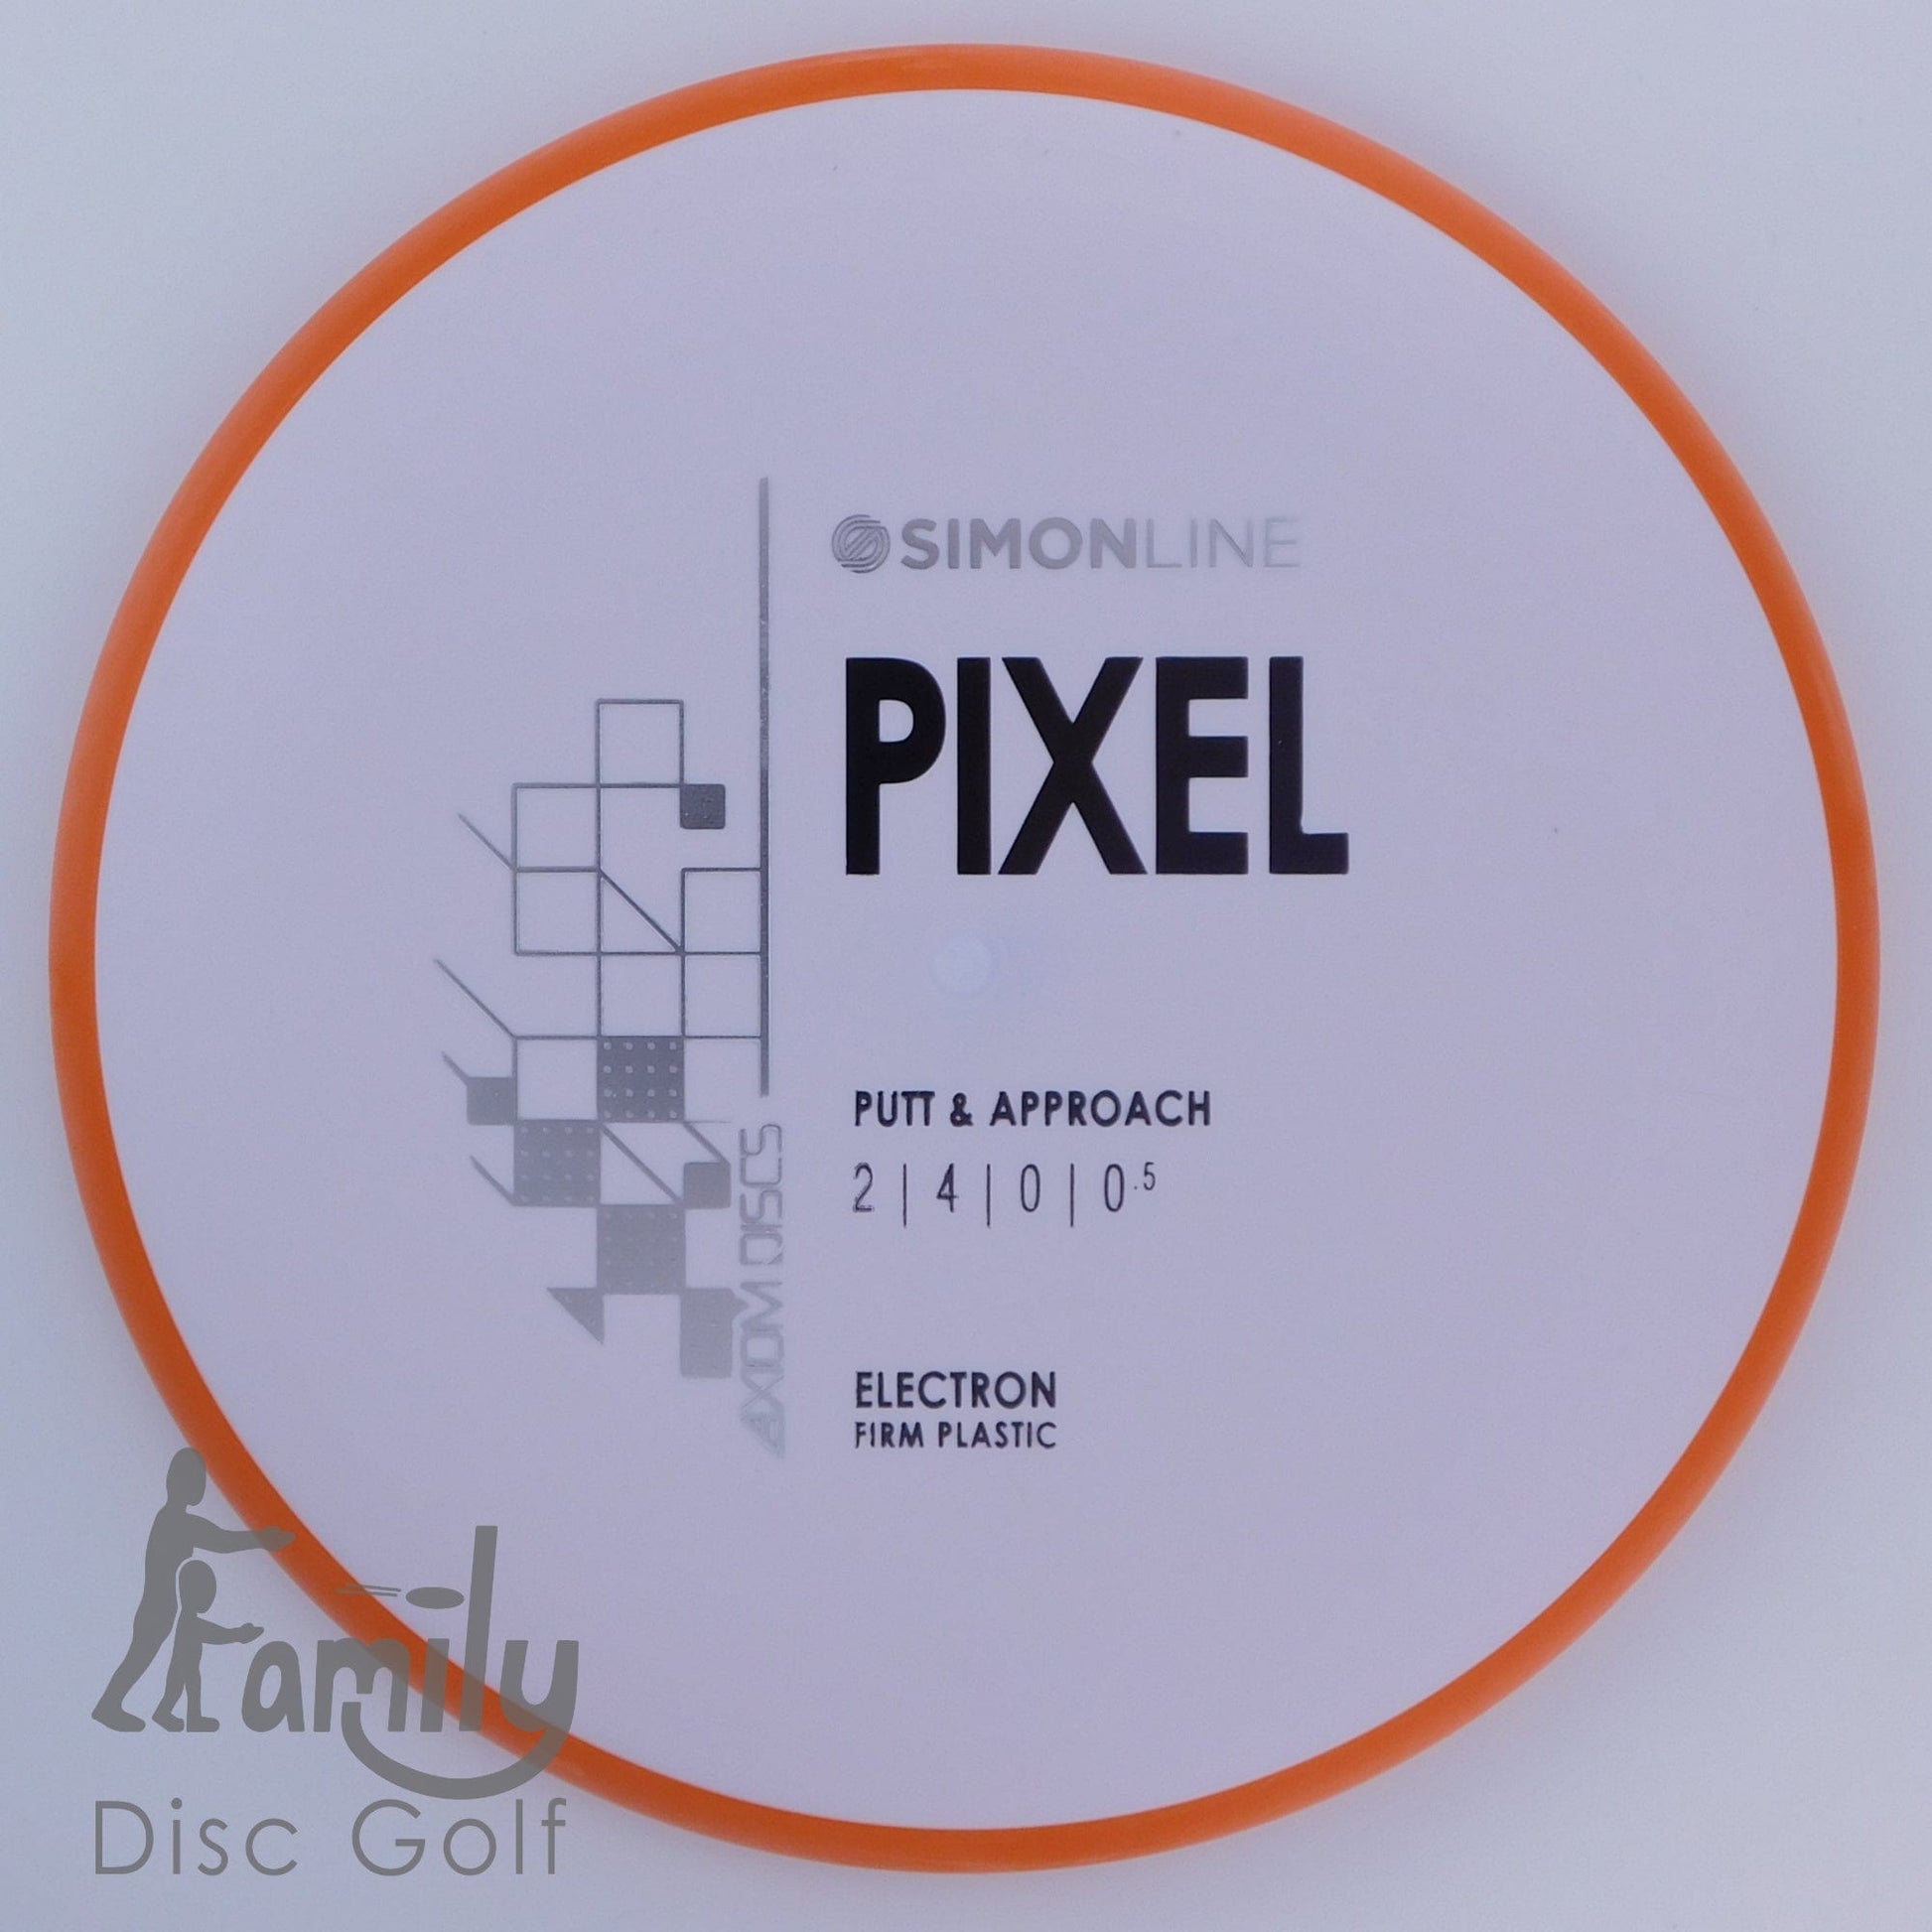 Axiom Pixel - Simon Line - Electron (Firm) 2│4│0│0.5 176.4g - White+Orange - Axiom Pixel - Electron Firm - 101888